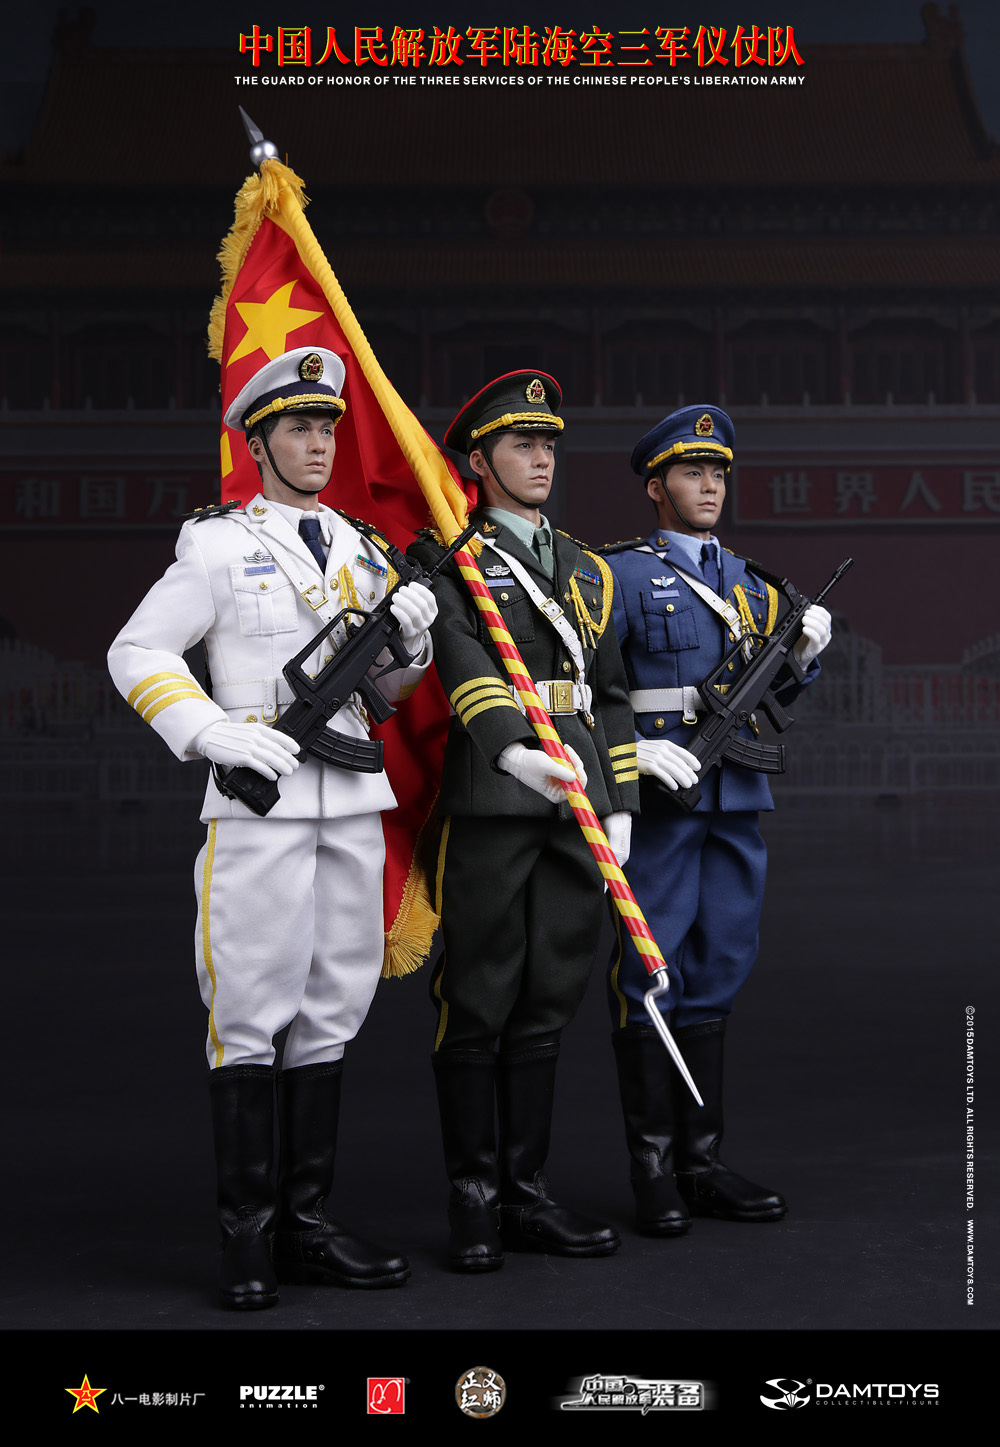 中国海陆空三军军服图片